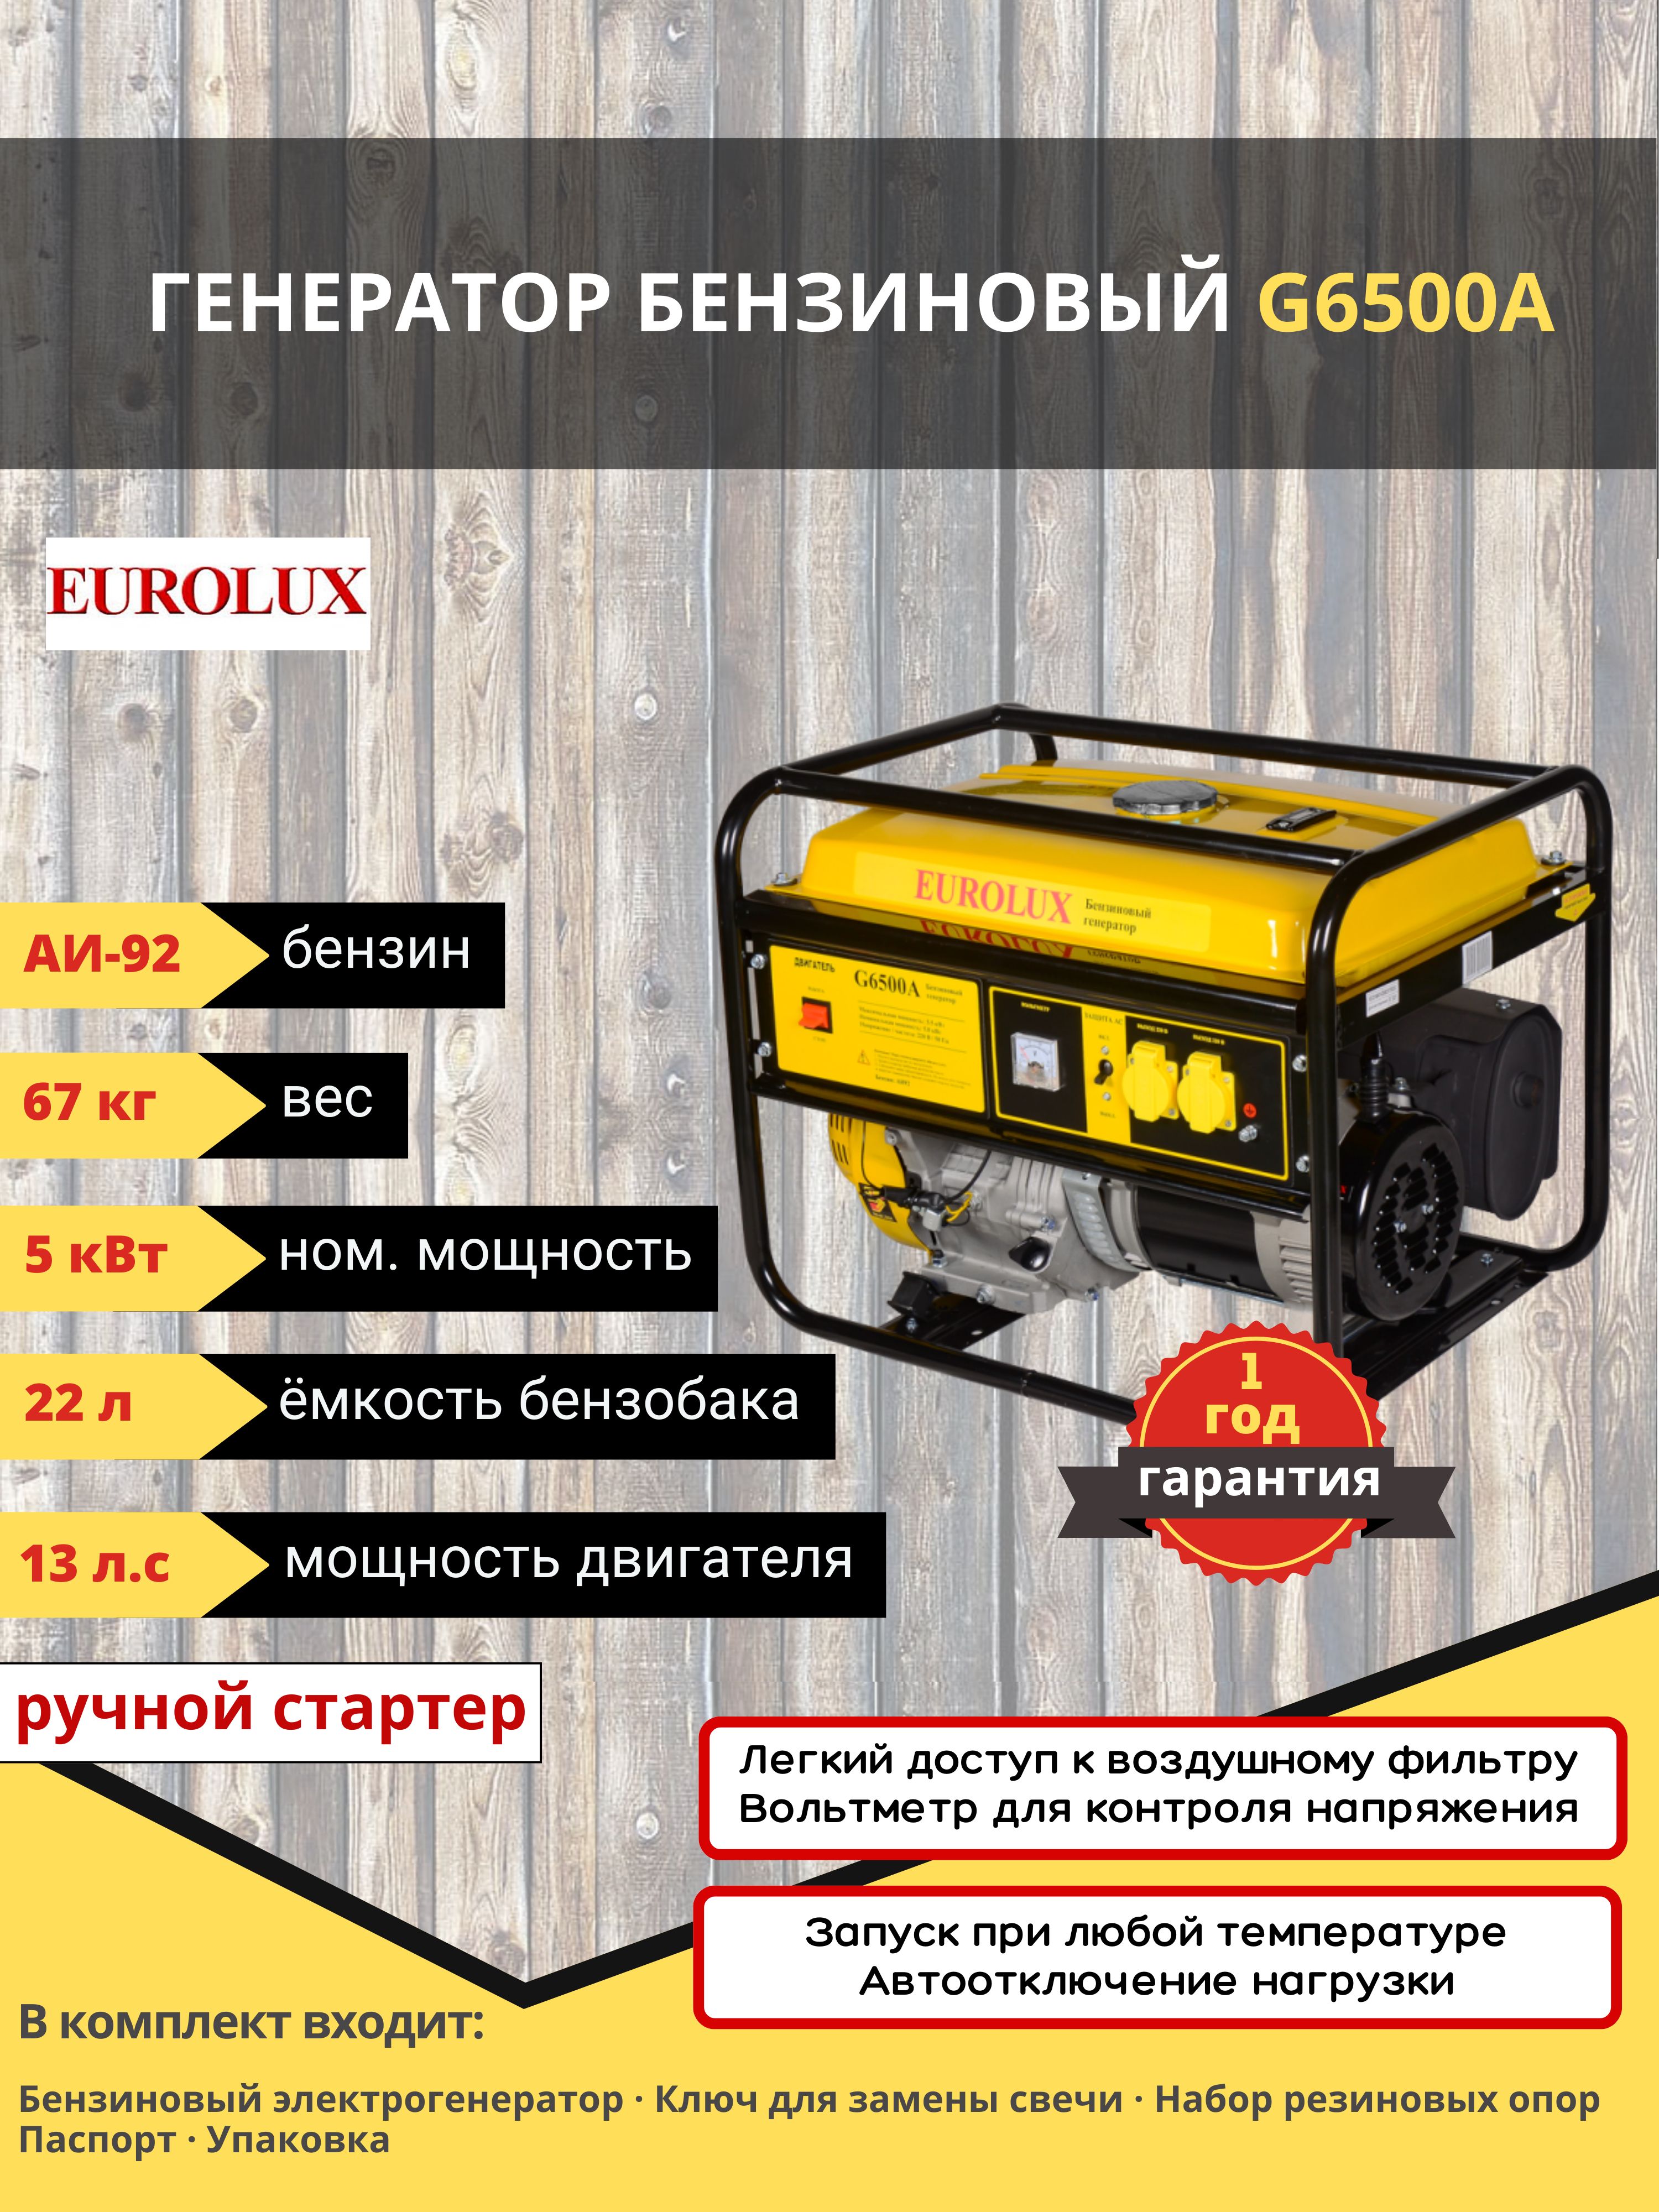 Eurolux g6500a. Электрогенератор g6500a Eurolux. Бензиновый Генератор Eurolux g6500a, (5500 Вт) тянет сварку. Комплект колёс на электрогенератор Eurolux g6500a. Сколько заливать масла в Генератор бензиновый g6500a.